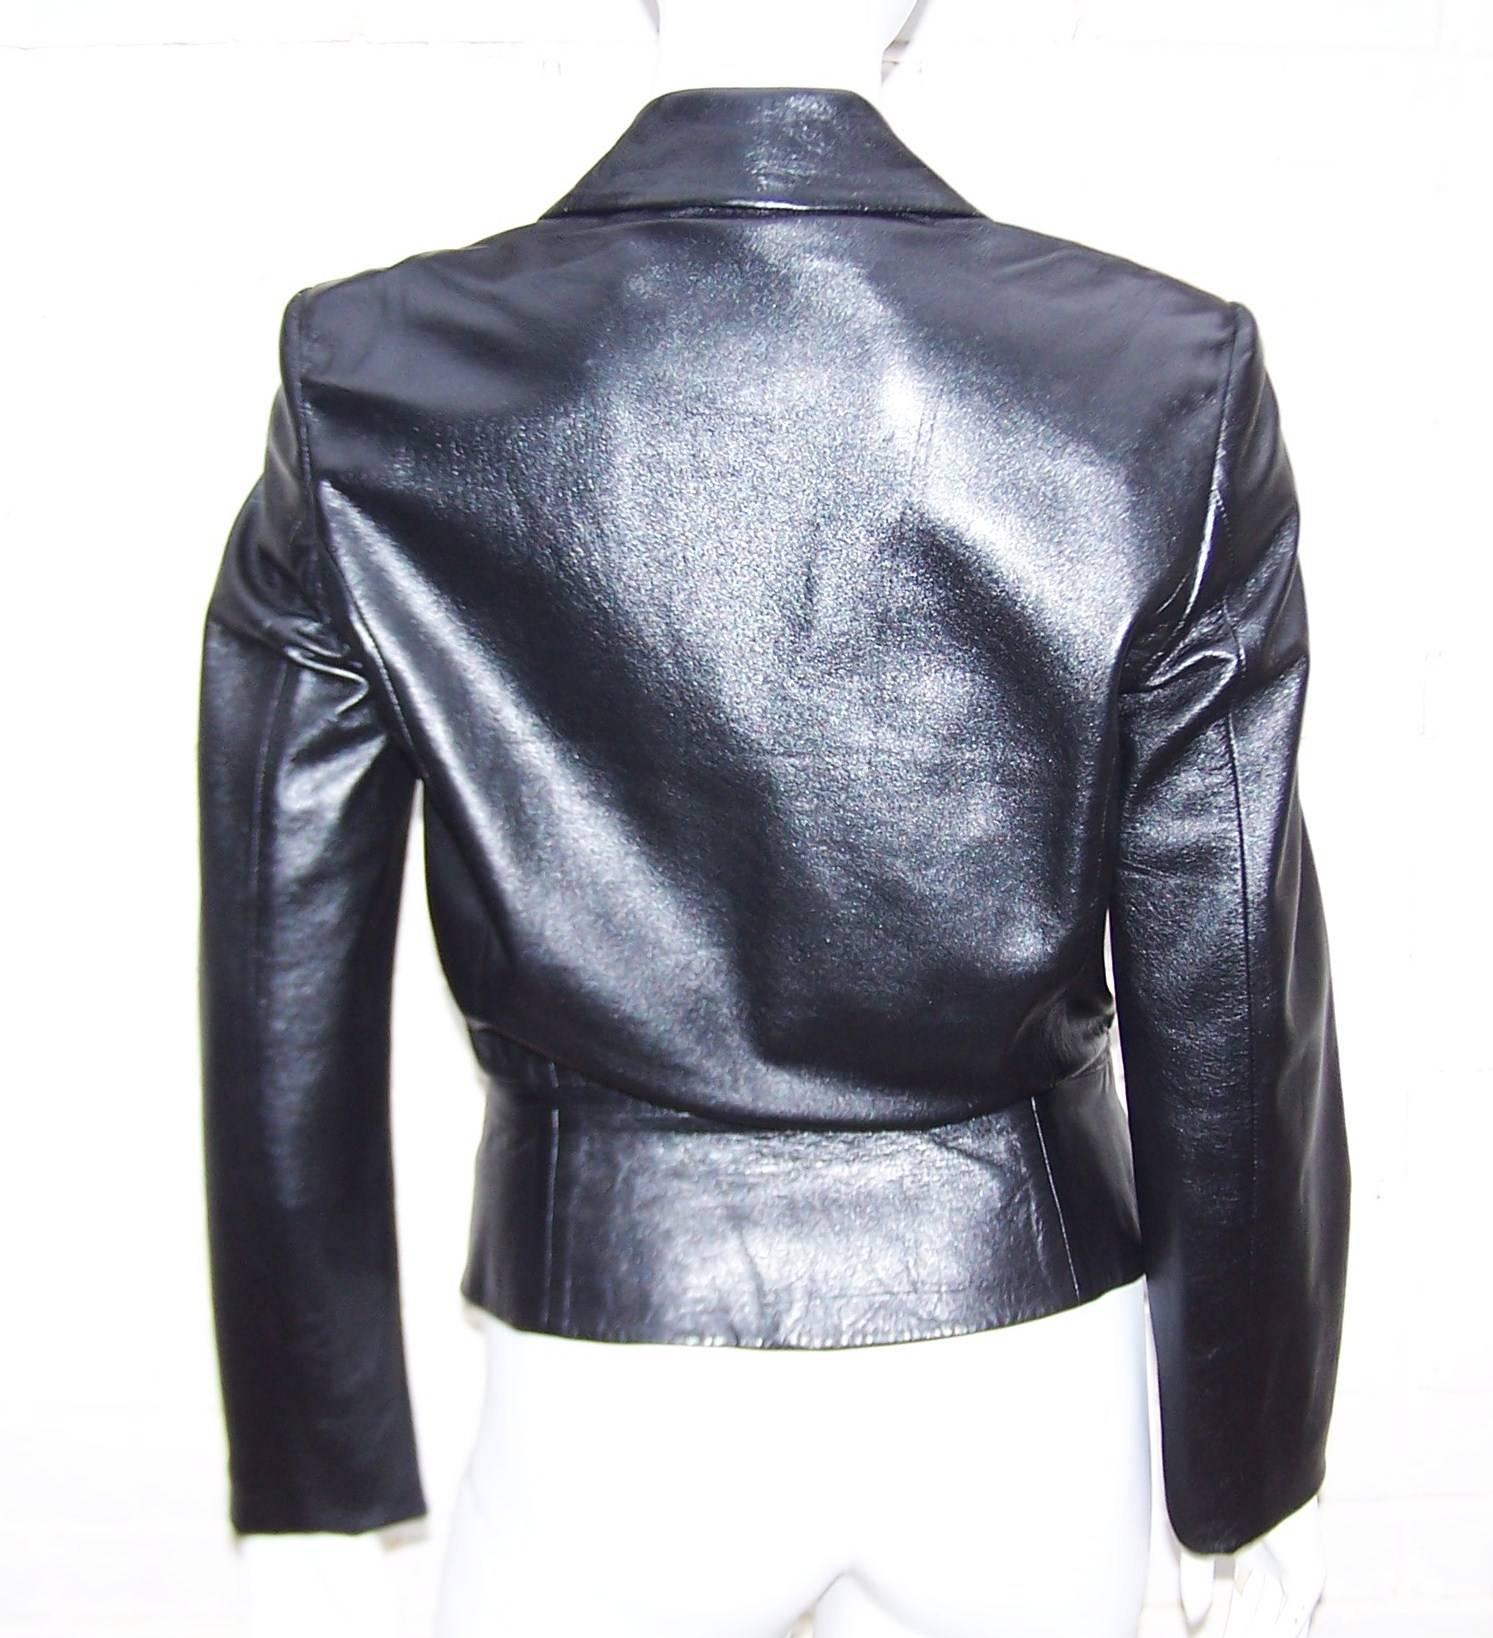 Edgy & Chic C.1990 Richard Tyler Black Leather Jacket 1